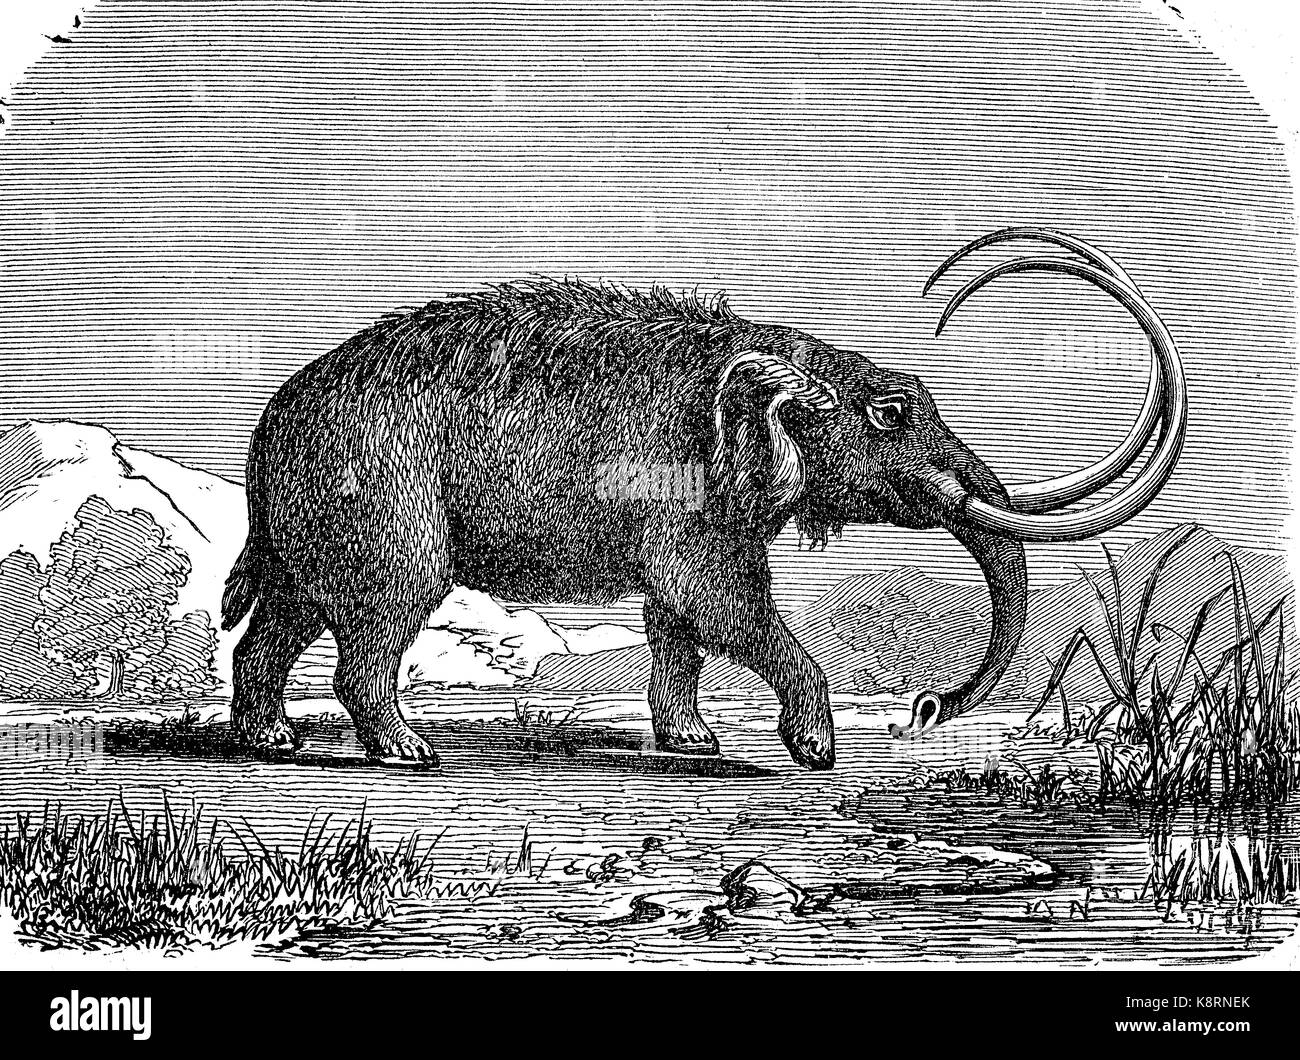 Des mastodontes sont de toute espèce d'mammutid proboscideans disparue dans le genre Mammut, apparentée au numérique des éléphants, l'amélioration de la reproduction d'une gravure sur bois, publié dans le 19e siècle Banque D'Images